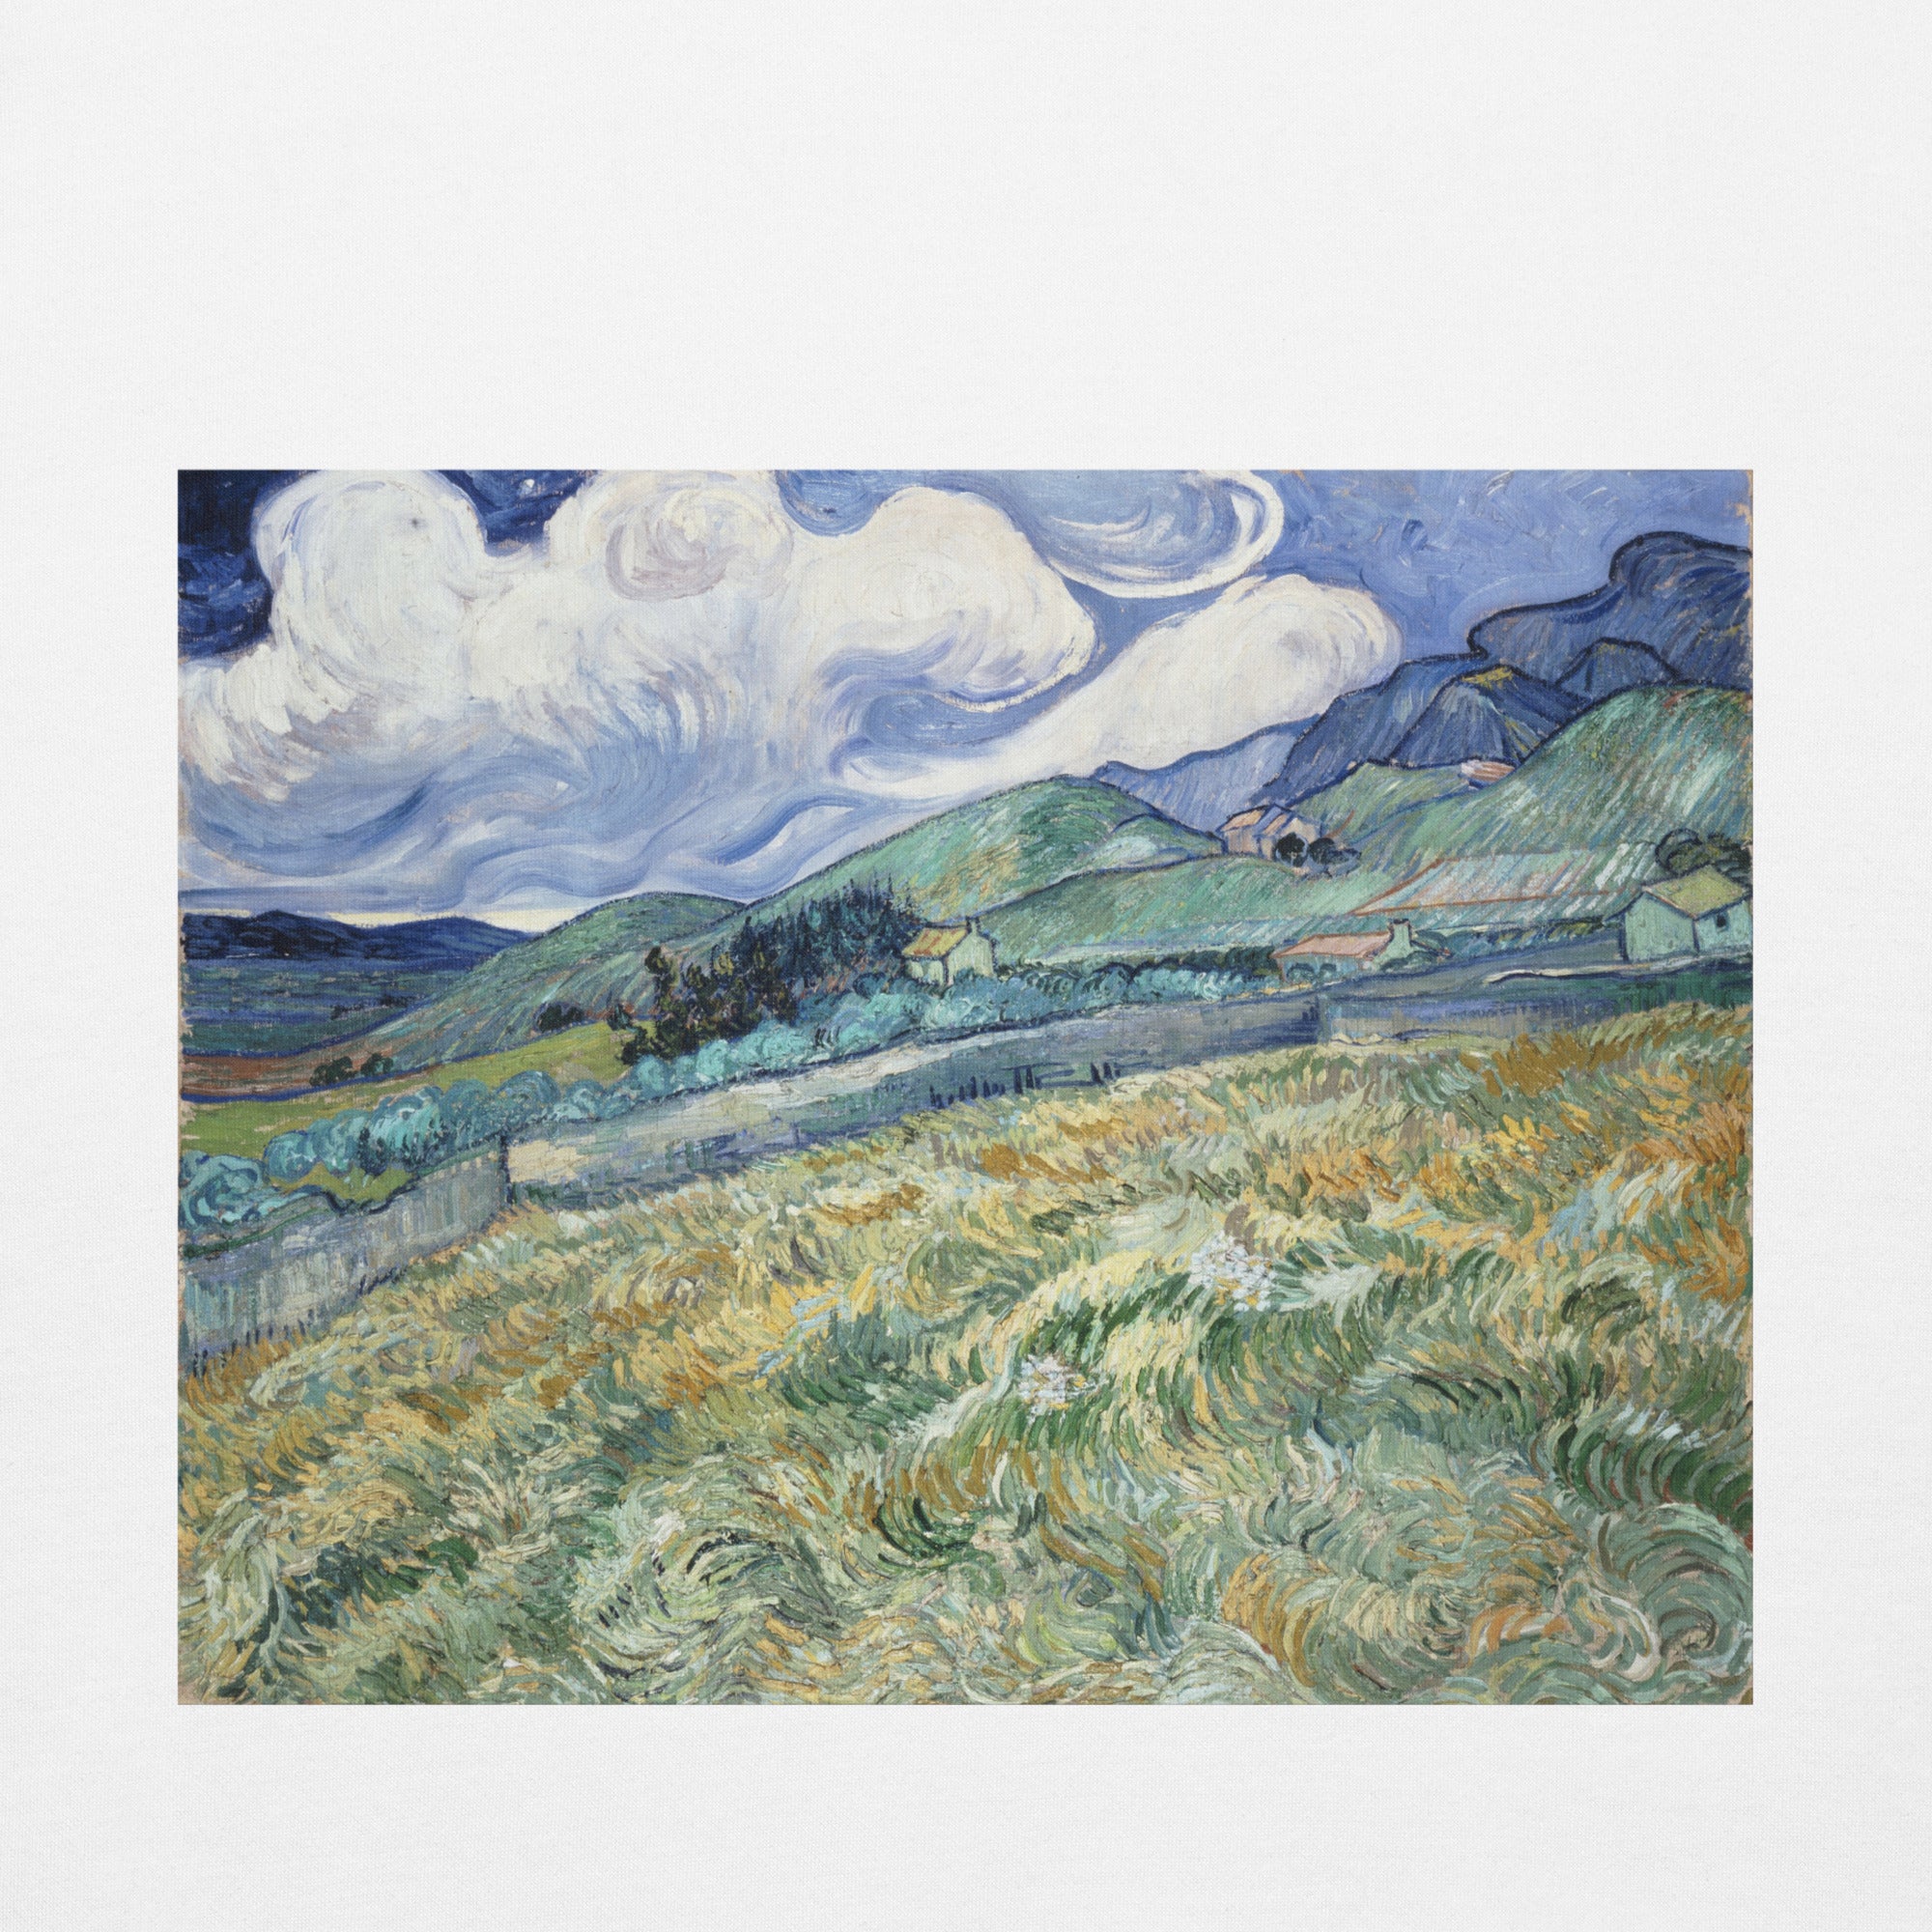 Vincent van Gogh 'Landscape from Saint-Rémy' Famous Painting Hoodie | Unisex Premium Art Hoodie